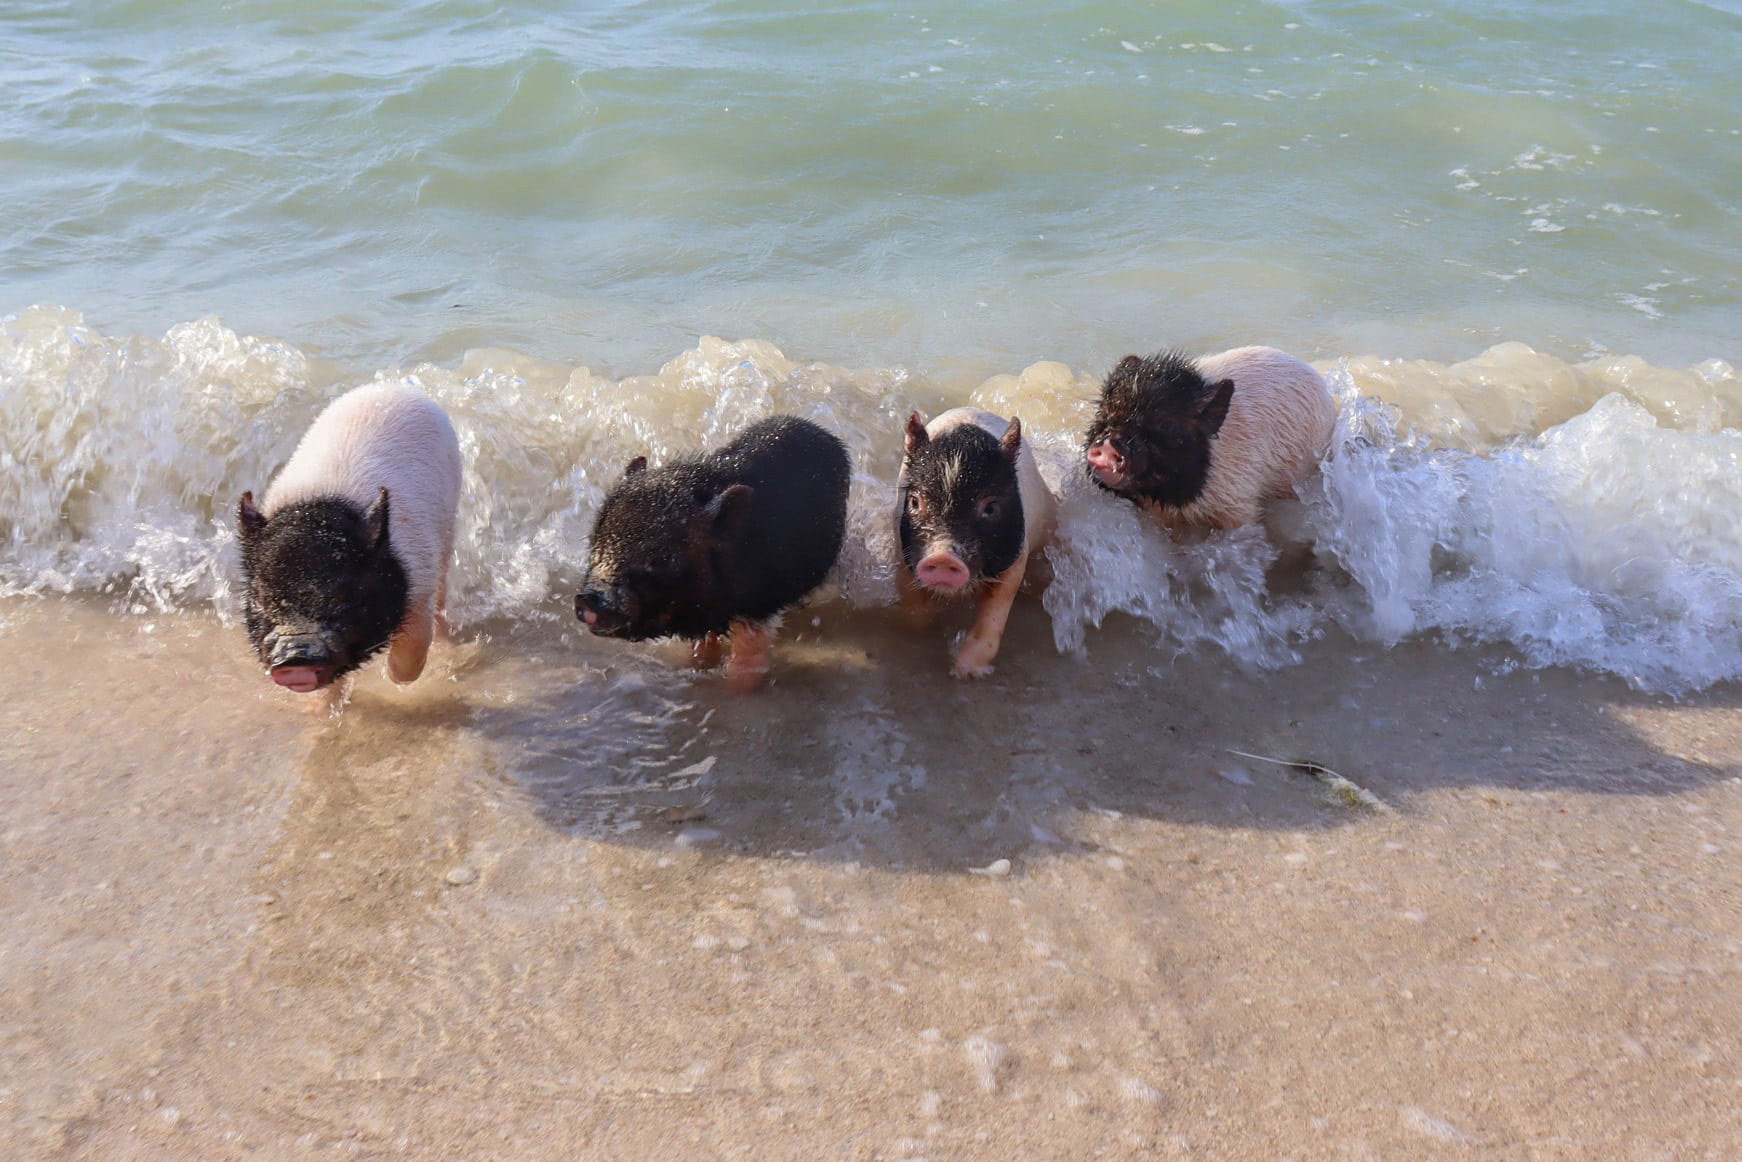 Pig Beach, juega con cerditos miniatura en esta playa yucateca